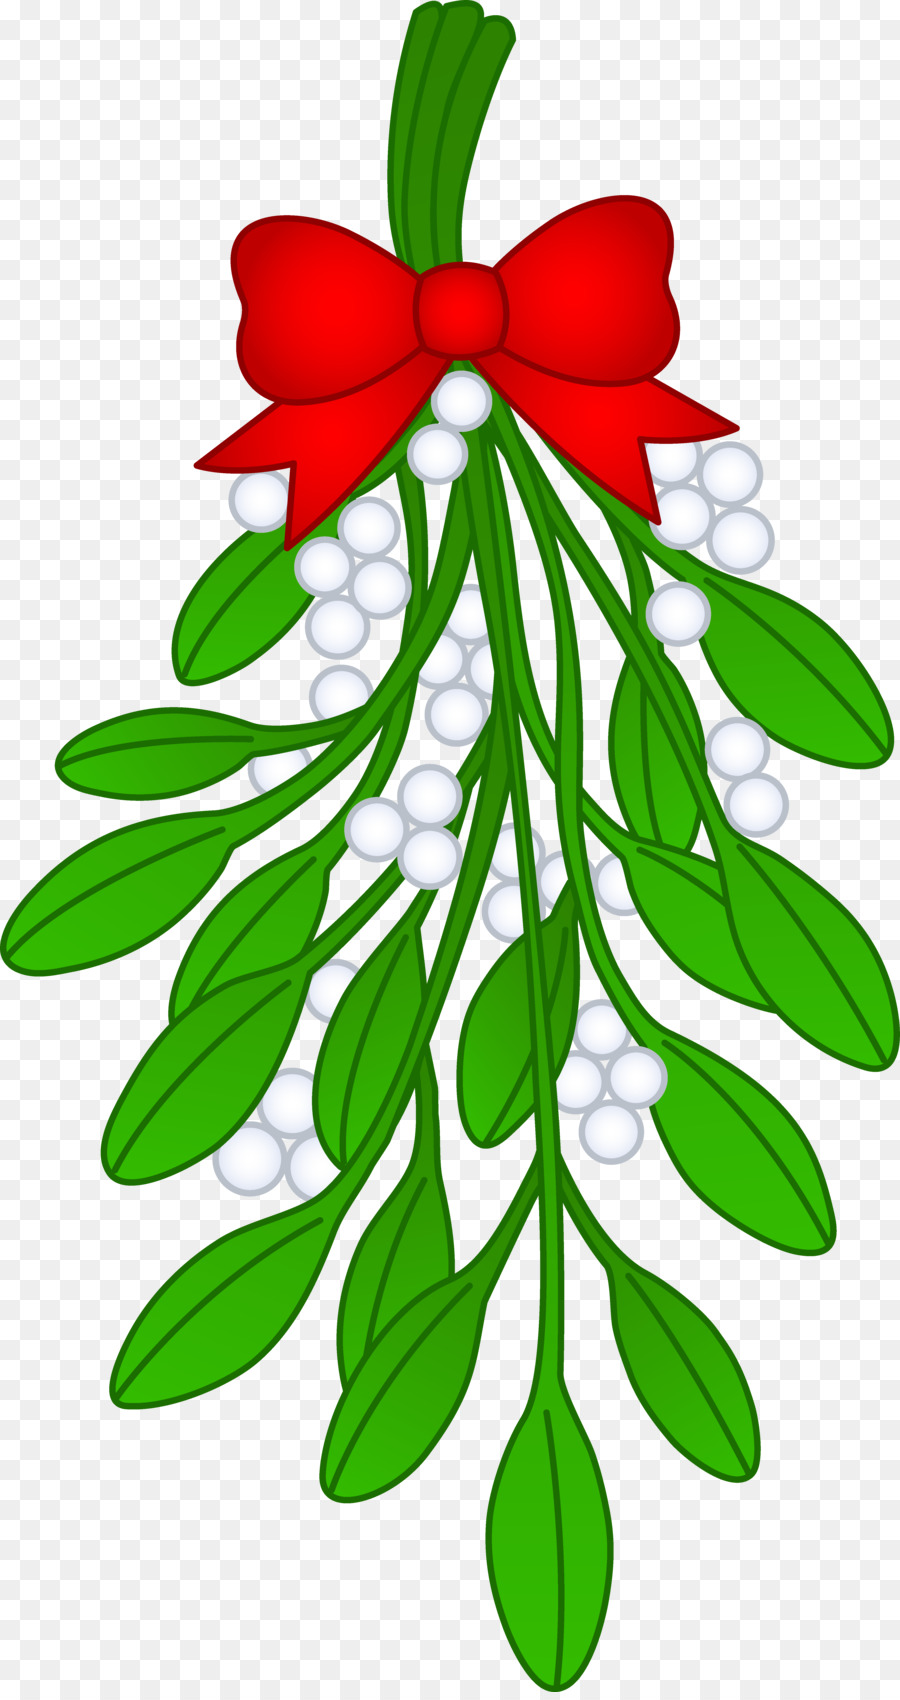 Mistletoe Christmas Kiss Santa Claus Clip art - Mistletoe Cliparts Transparent png download - 4622*8688 - Free Transparent Mistletoe png Download.